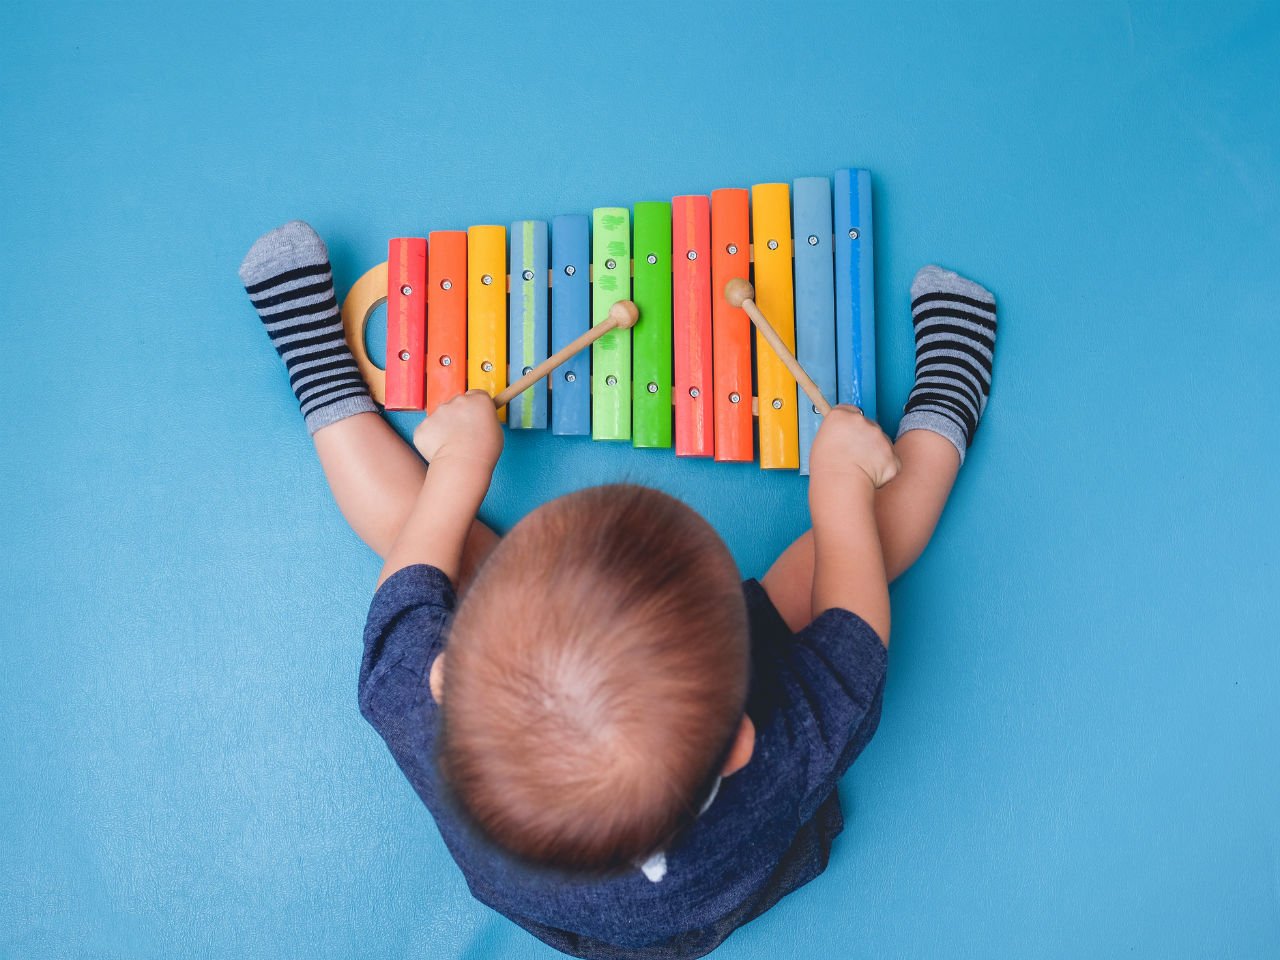 baby playing xylophone